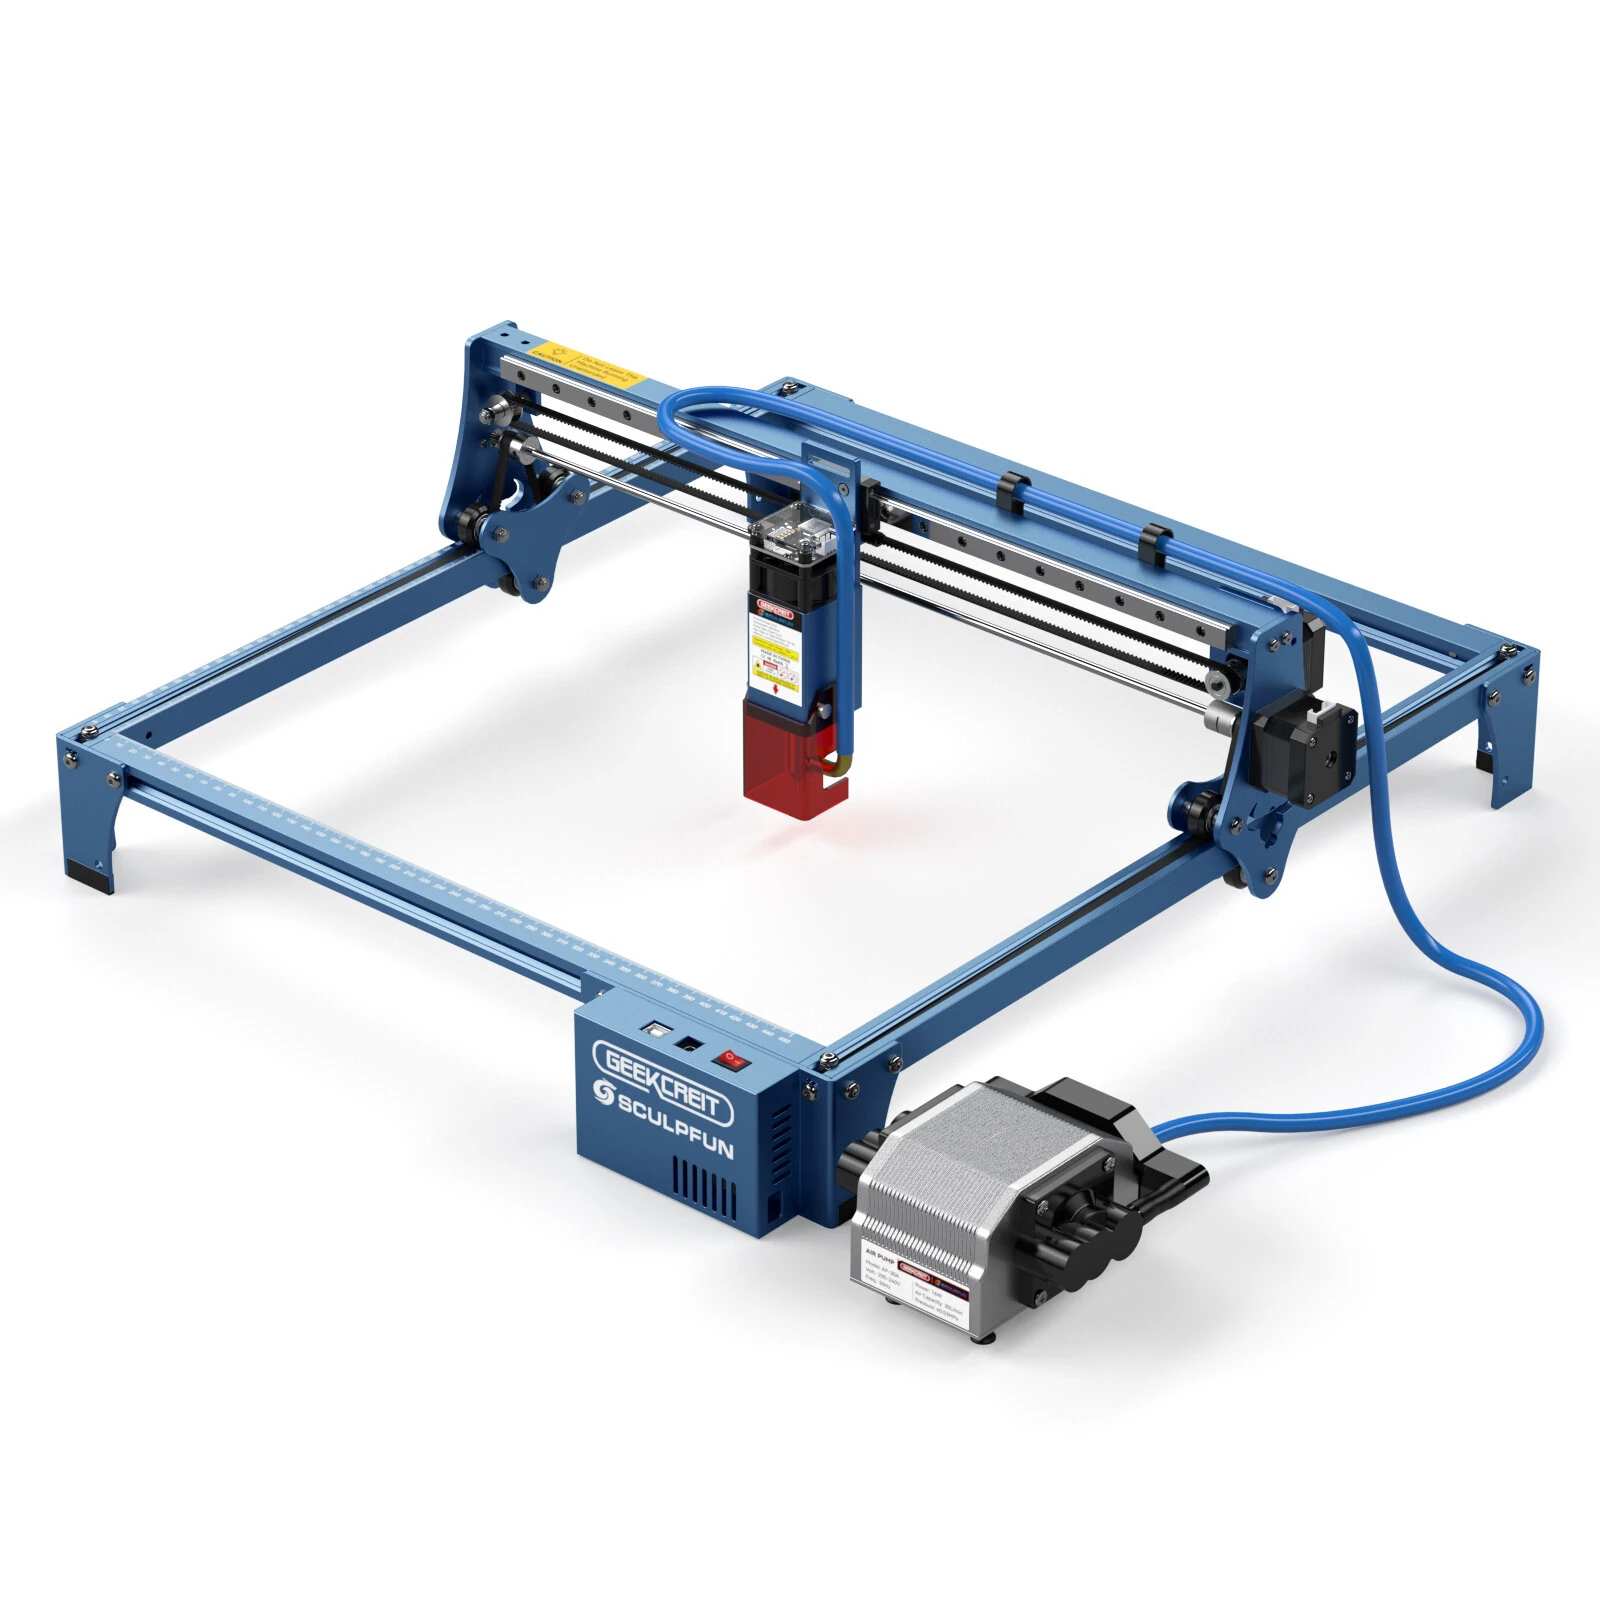 GEEKCREIT&SCULPFUN S10 Laser Engraving Machine Banggood Coupon Promo Code (CZ Warehouse)